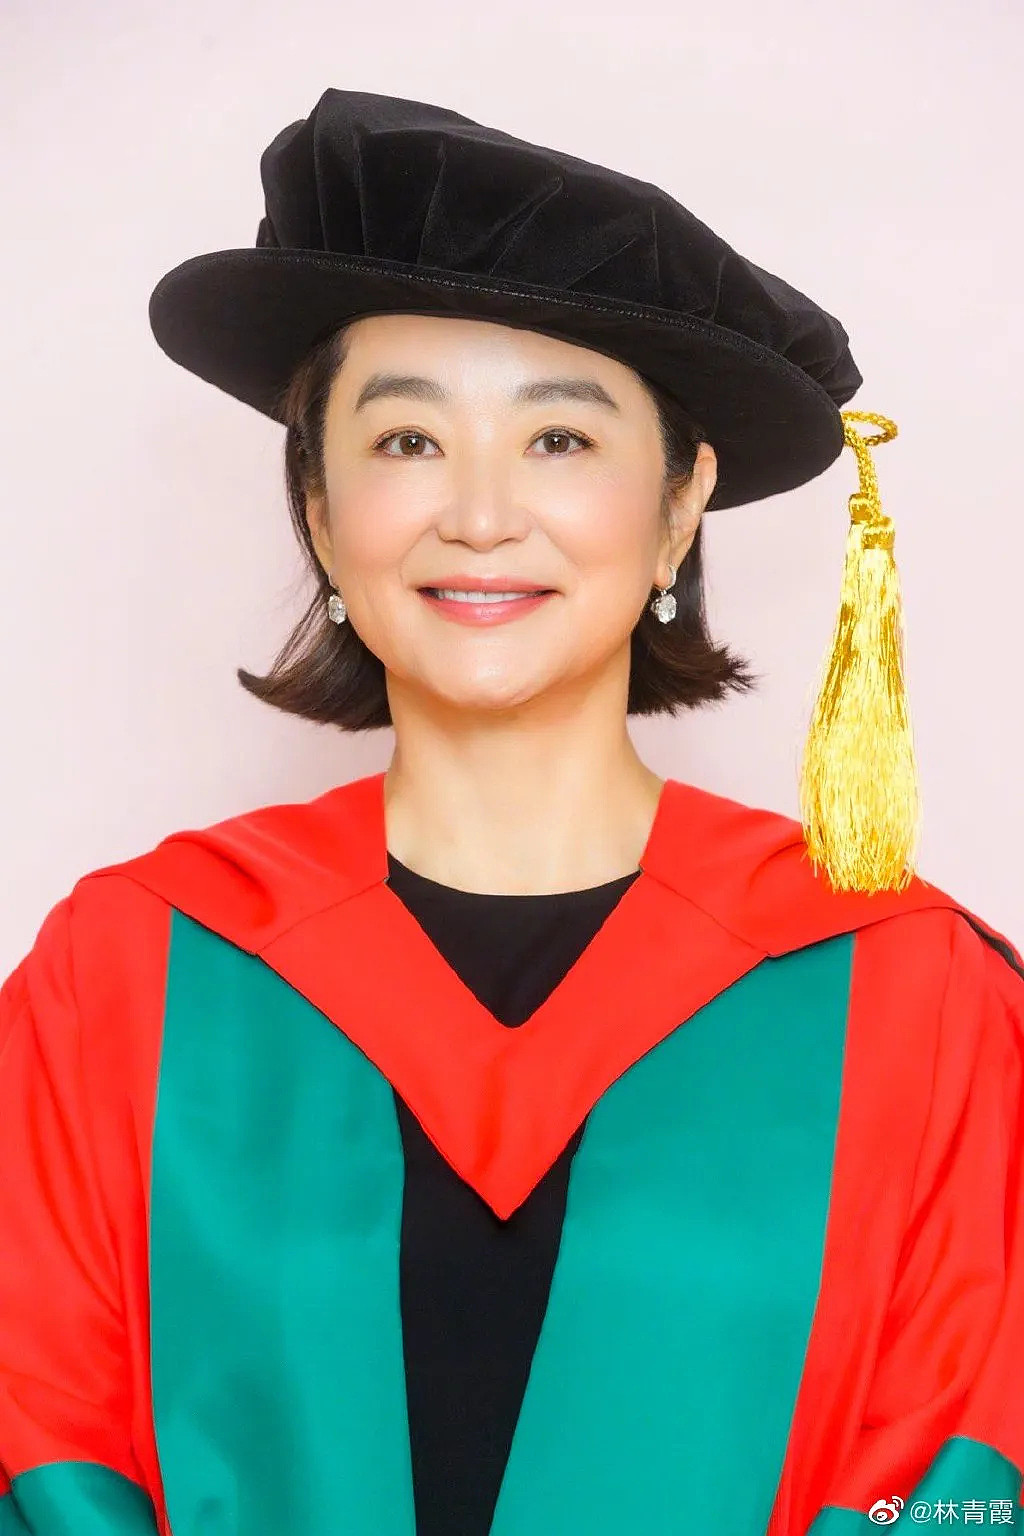 林青霞昨獲香港大學頒發名譽社會科學博士學位。本人微博